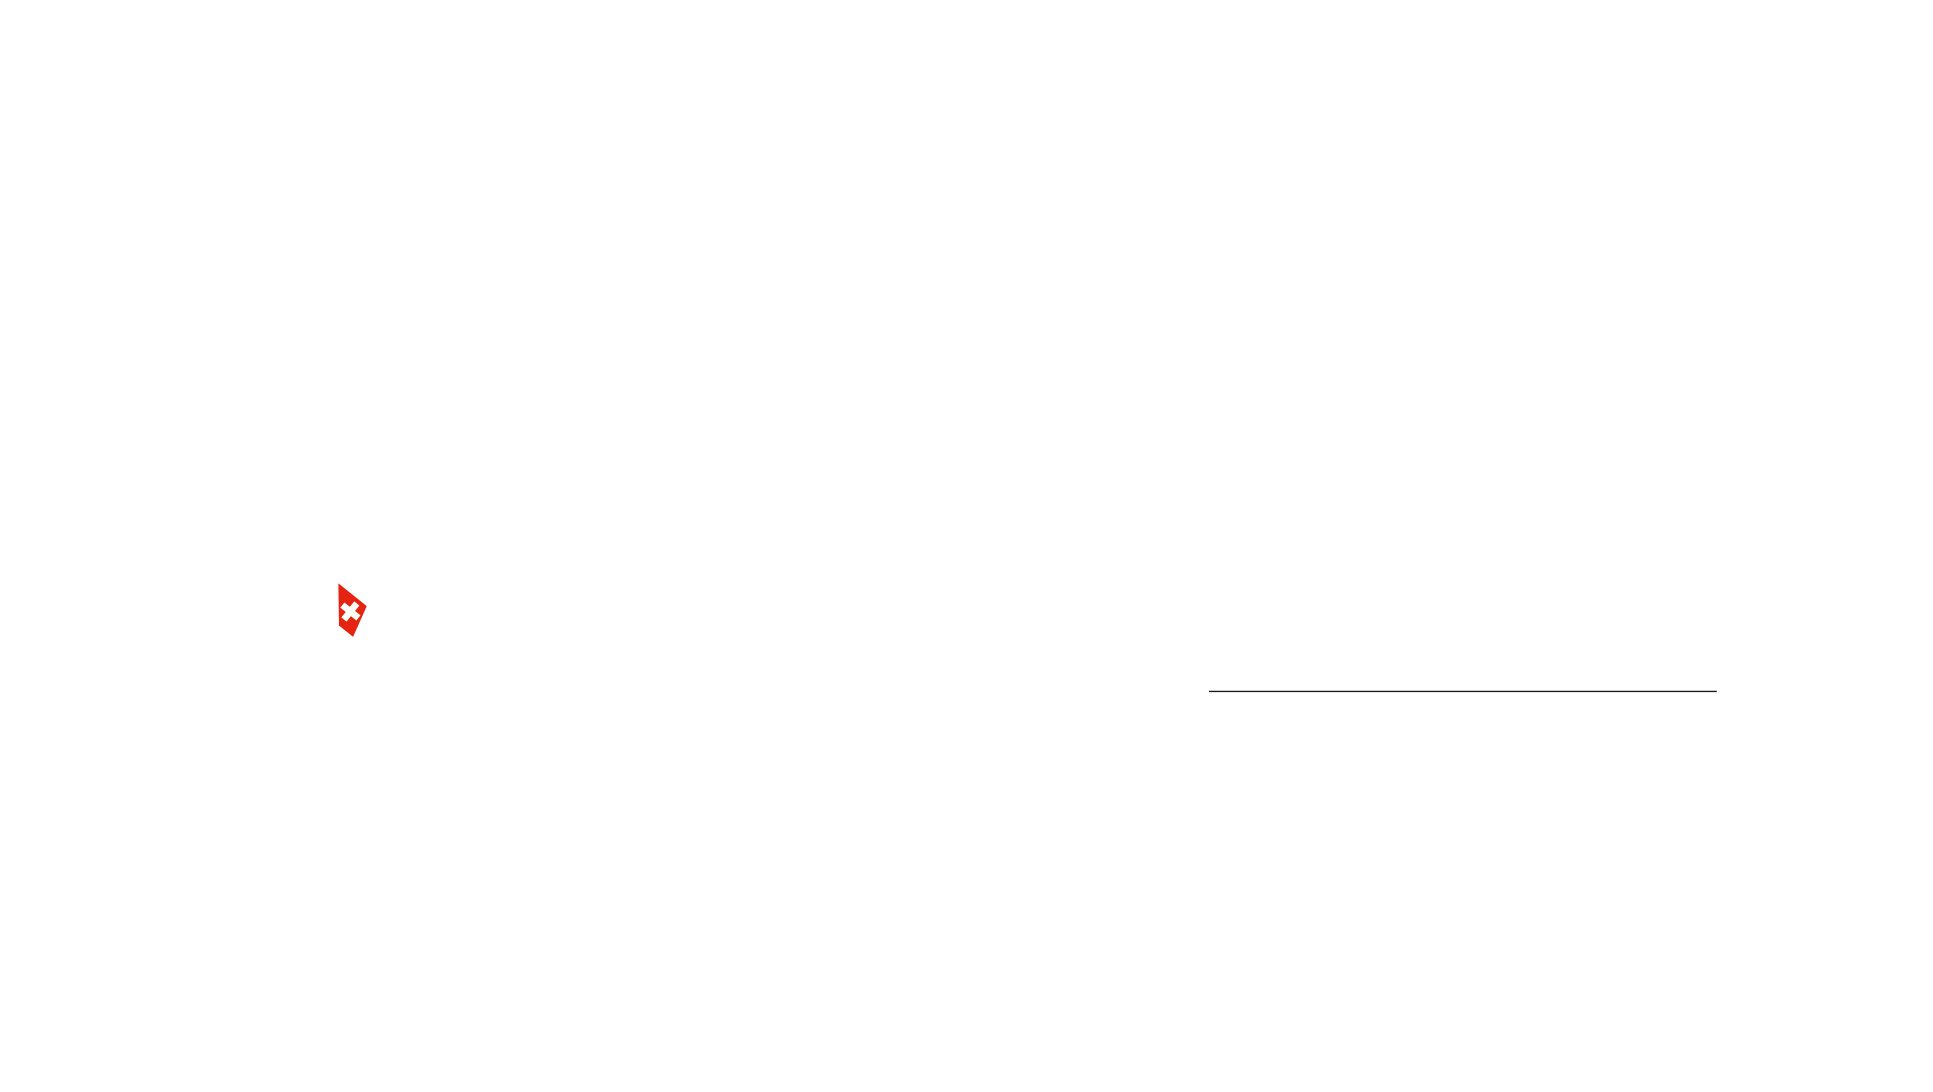 Gonet Geneva Open 2023